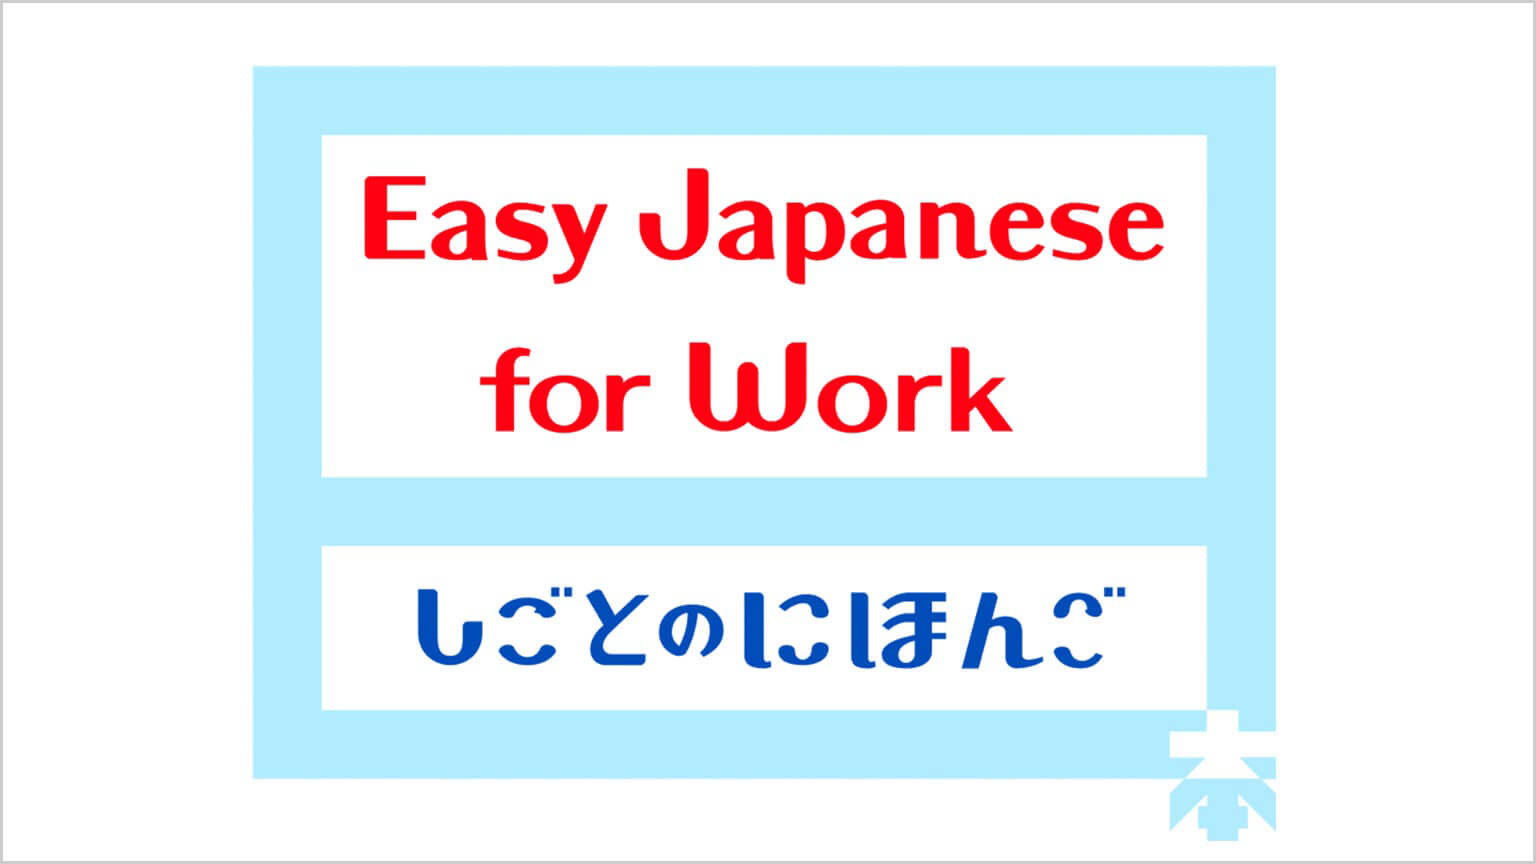 အလုပ်ထဲက လွယ်ကူတဲ့ဂျပန်စကား
Easy Japanese for Work